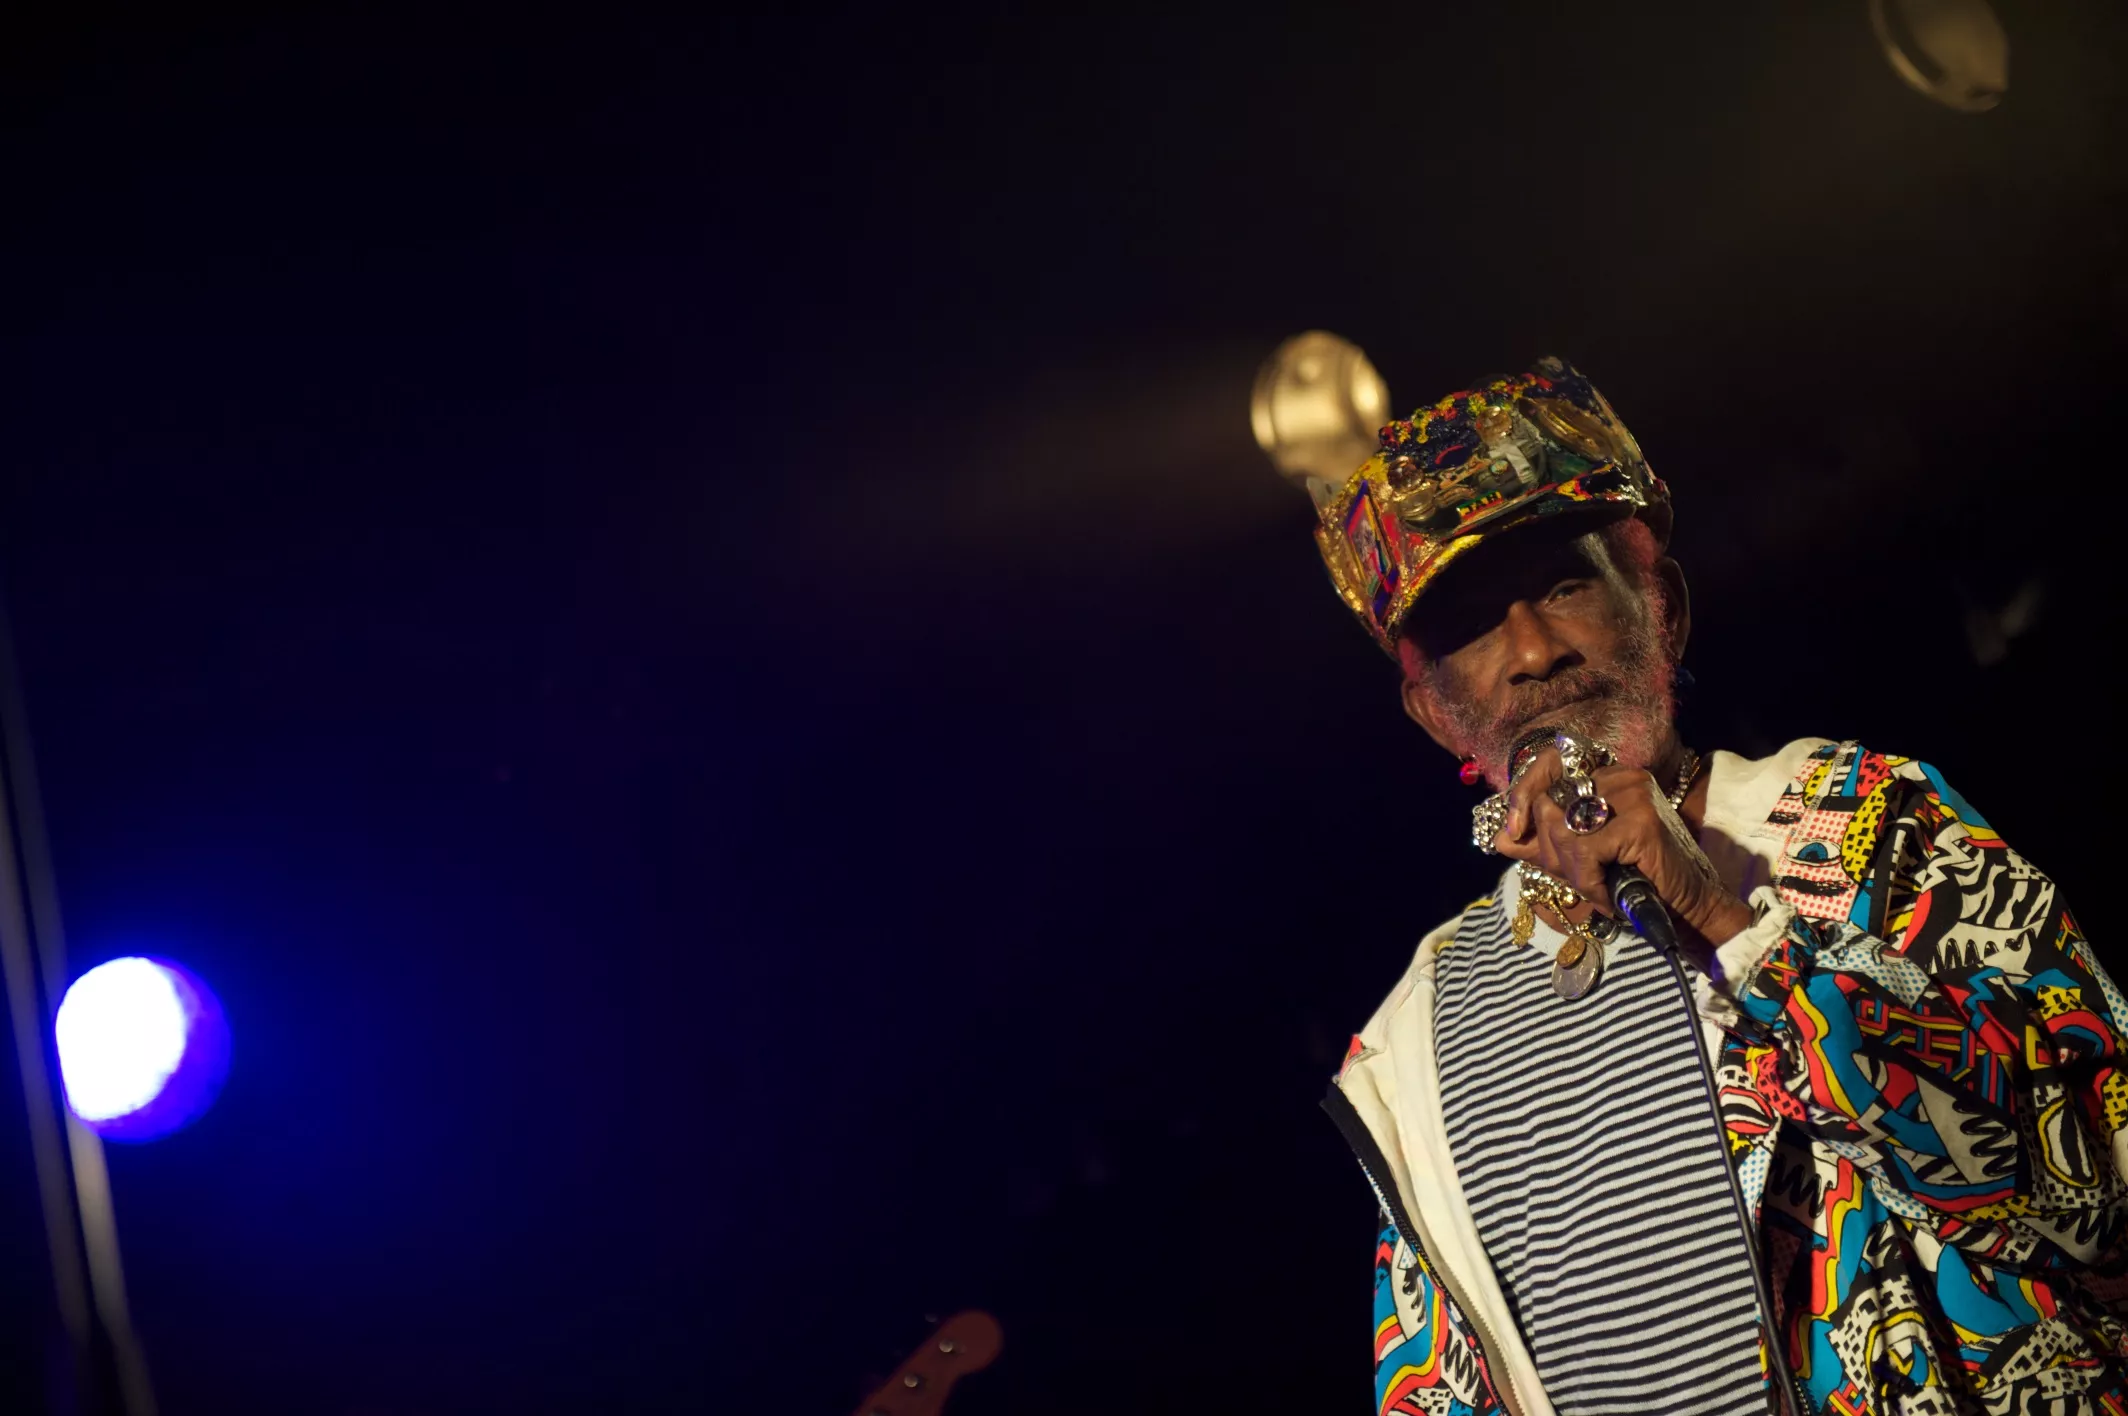 NEKROLOG: Lee ”Scratch” Perry – farvel til en af reggaemusikkens allerstørste personligheder